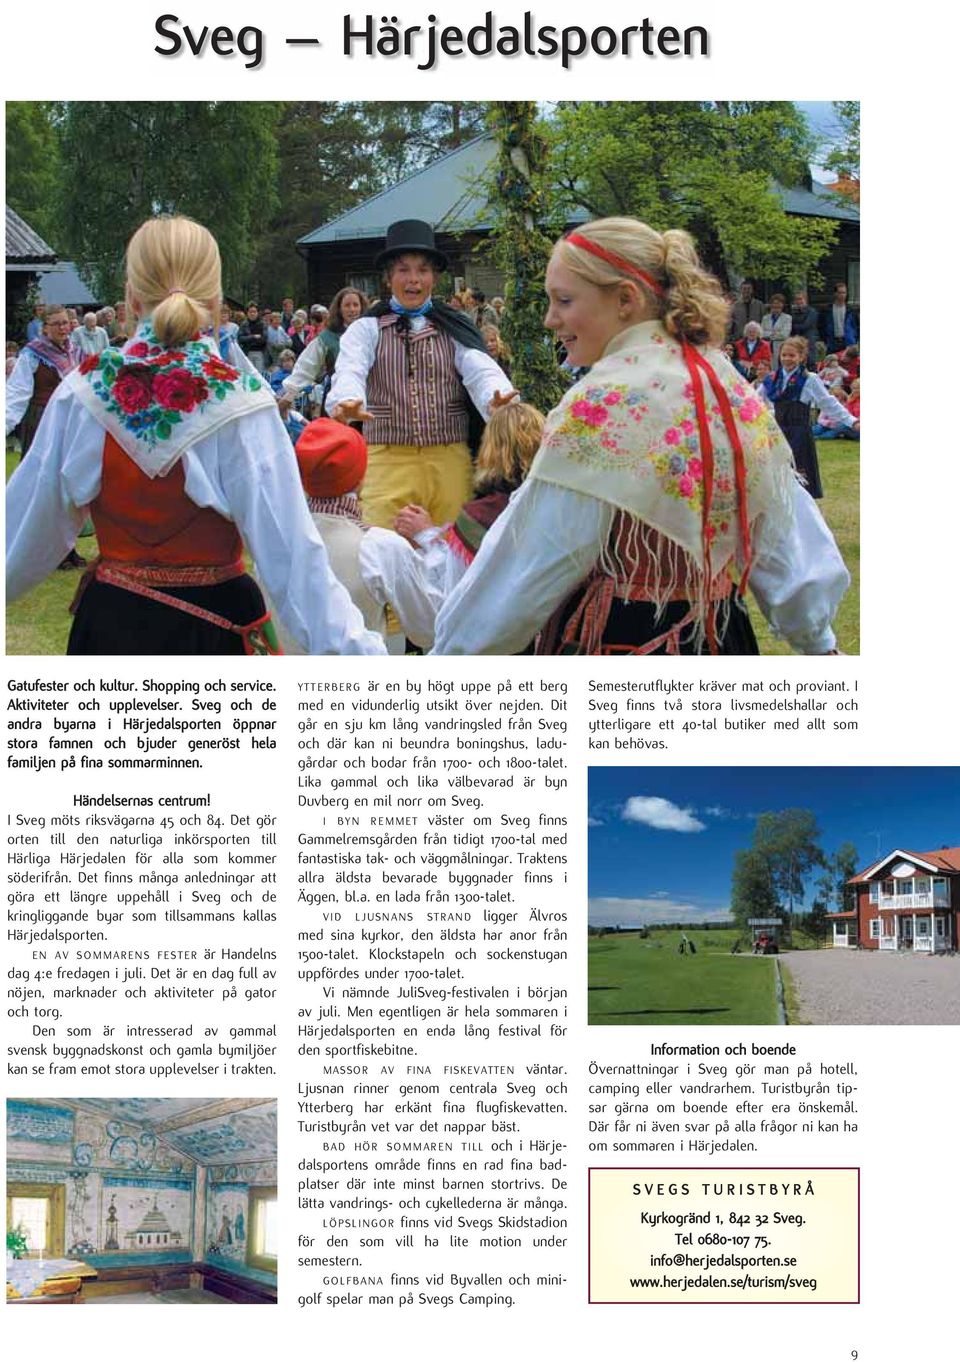 Det finns många anledningar att göra ett längre uppehåll i Sveg och de kringliggande byar som tillsammans kallas Härjedalsporten. EN AV SOMMARENS FESTER är Handelns dag 4:e fredagen i juli.